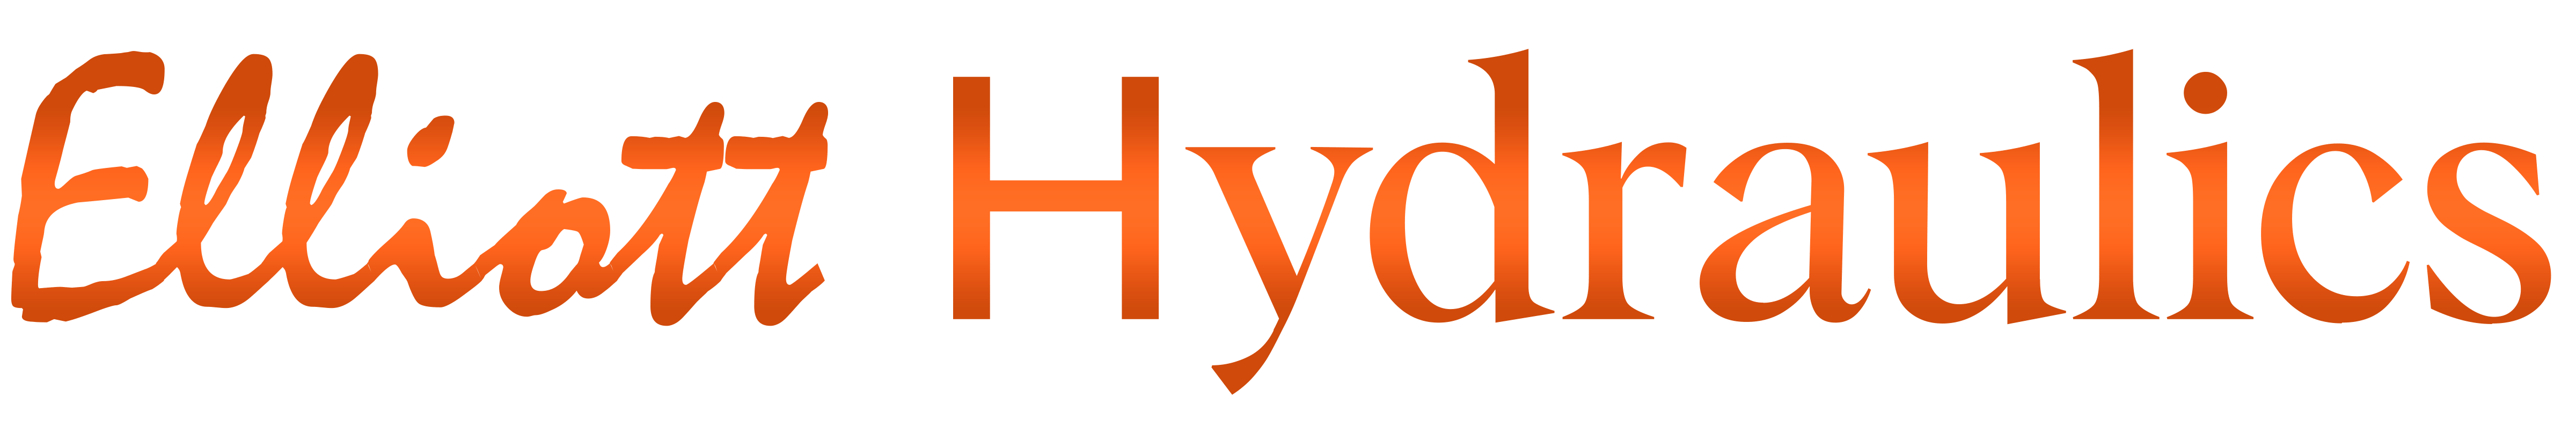 Elliott Hydraulics logo